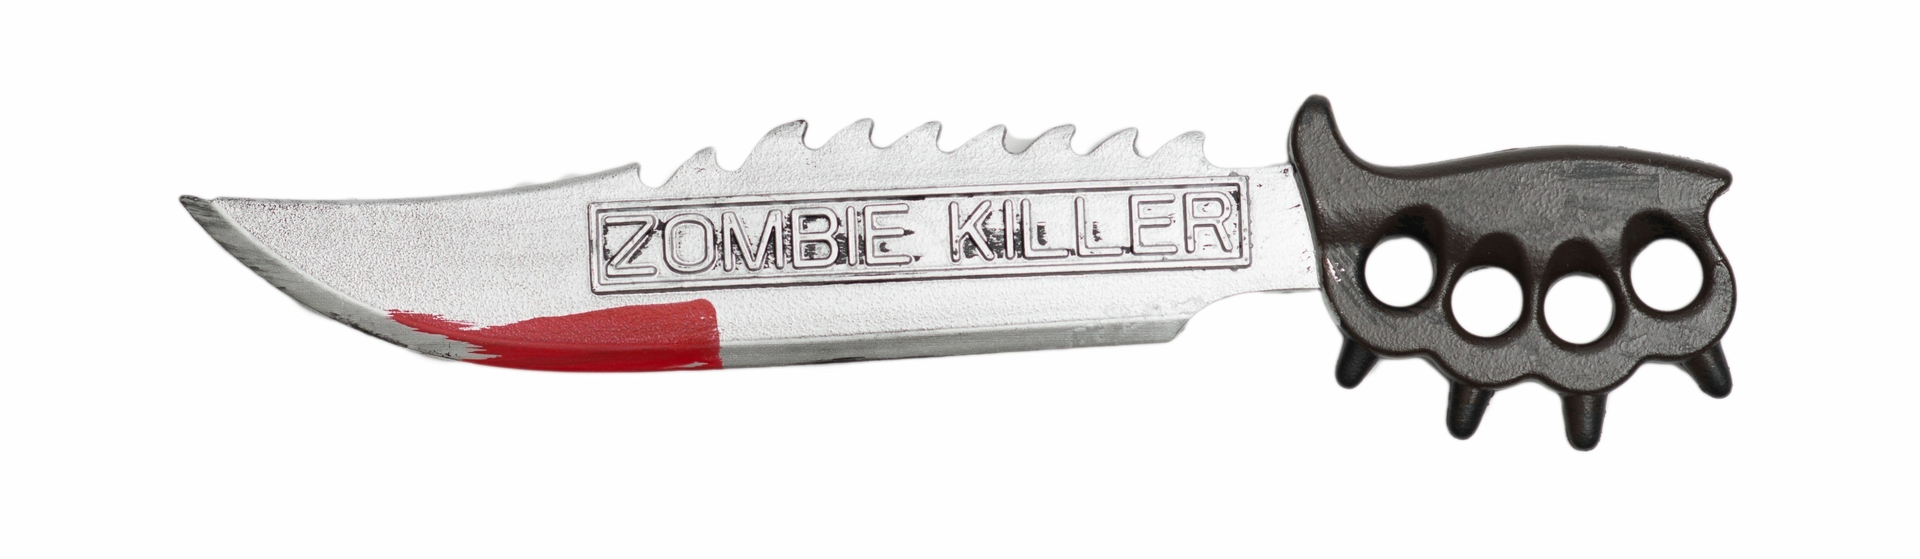 Zombie Killer knife 50 cm